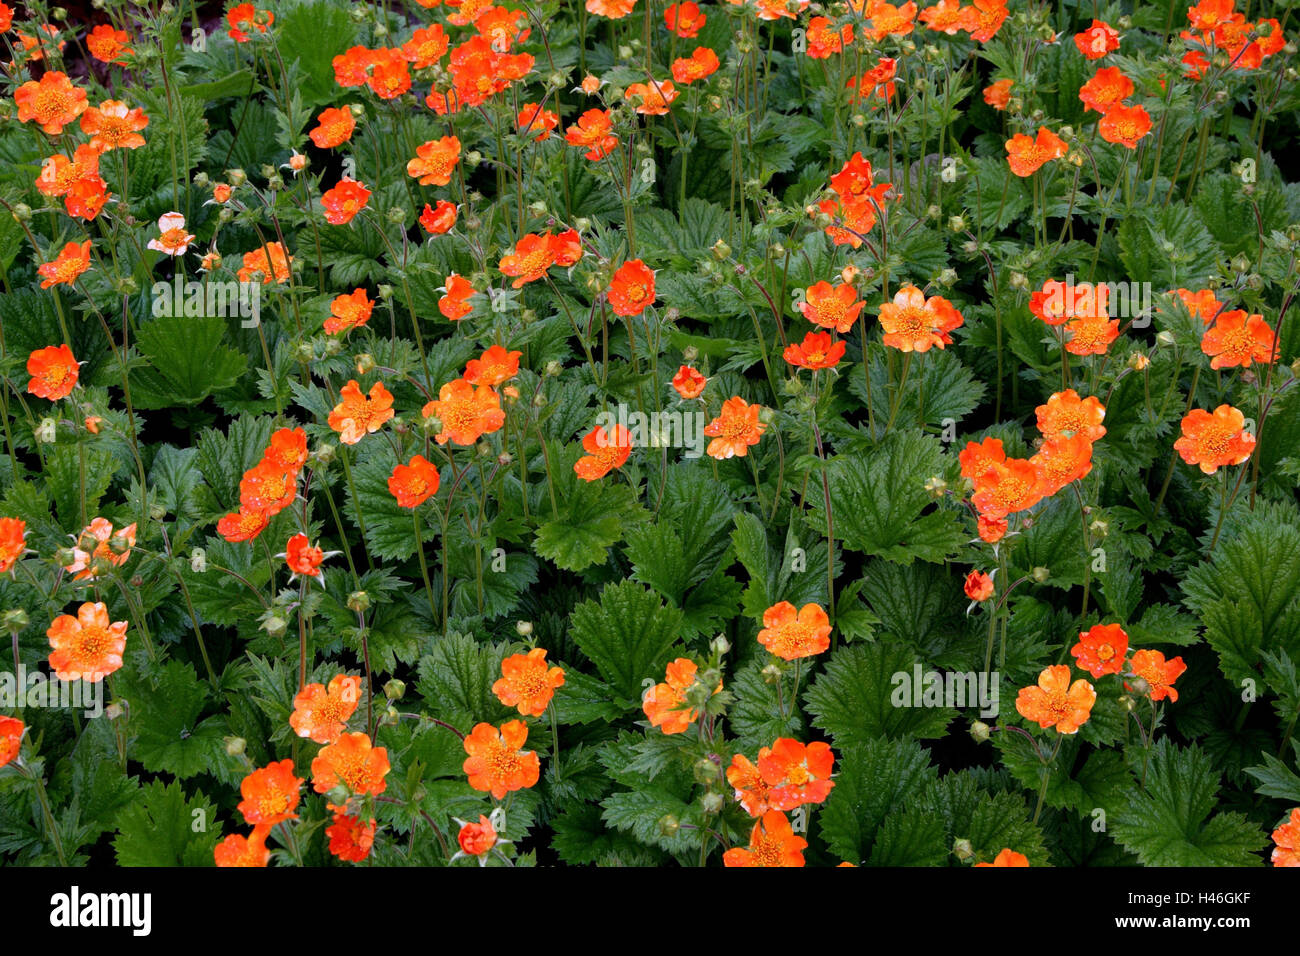 Flowers, colewort 'Borisii', Geum coccineum 'Borisii', Stock Photo